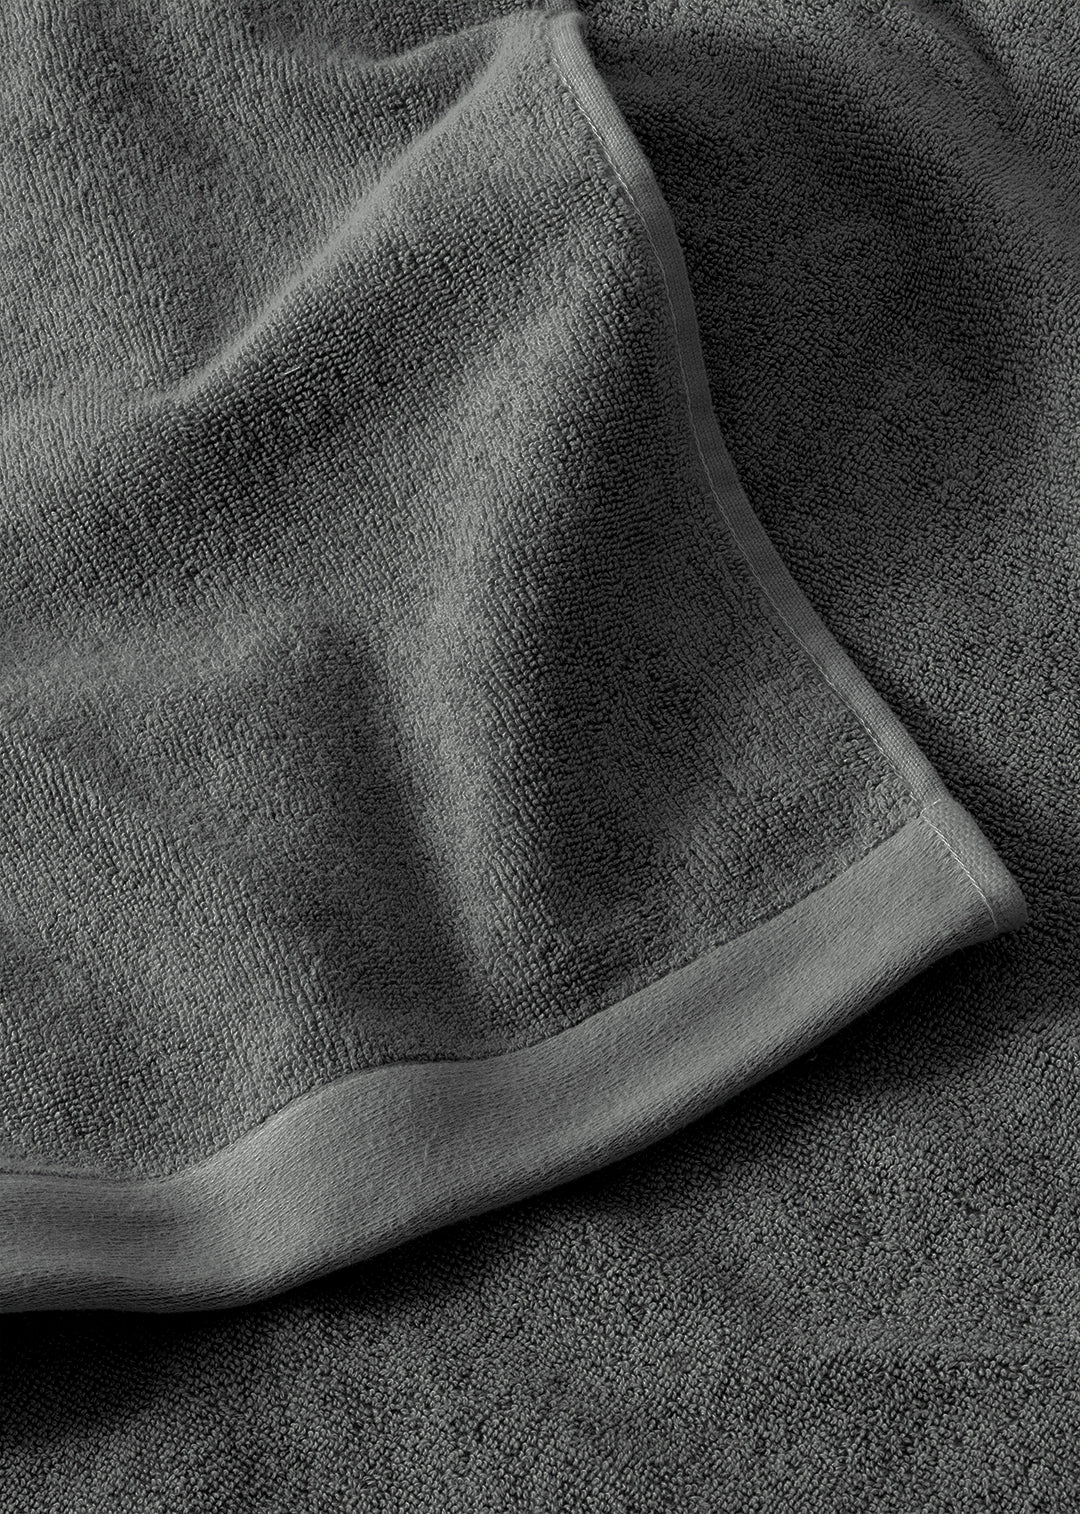 Oplev Luksus med Antracitgrå Frotté Håndklæde | Sekan Studio – ByNordico